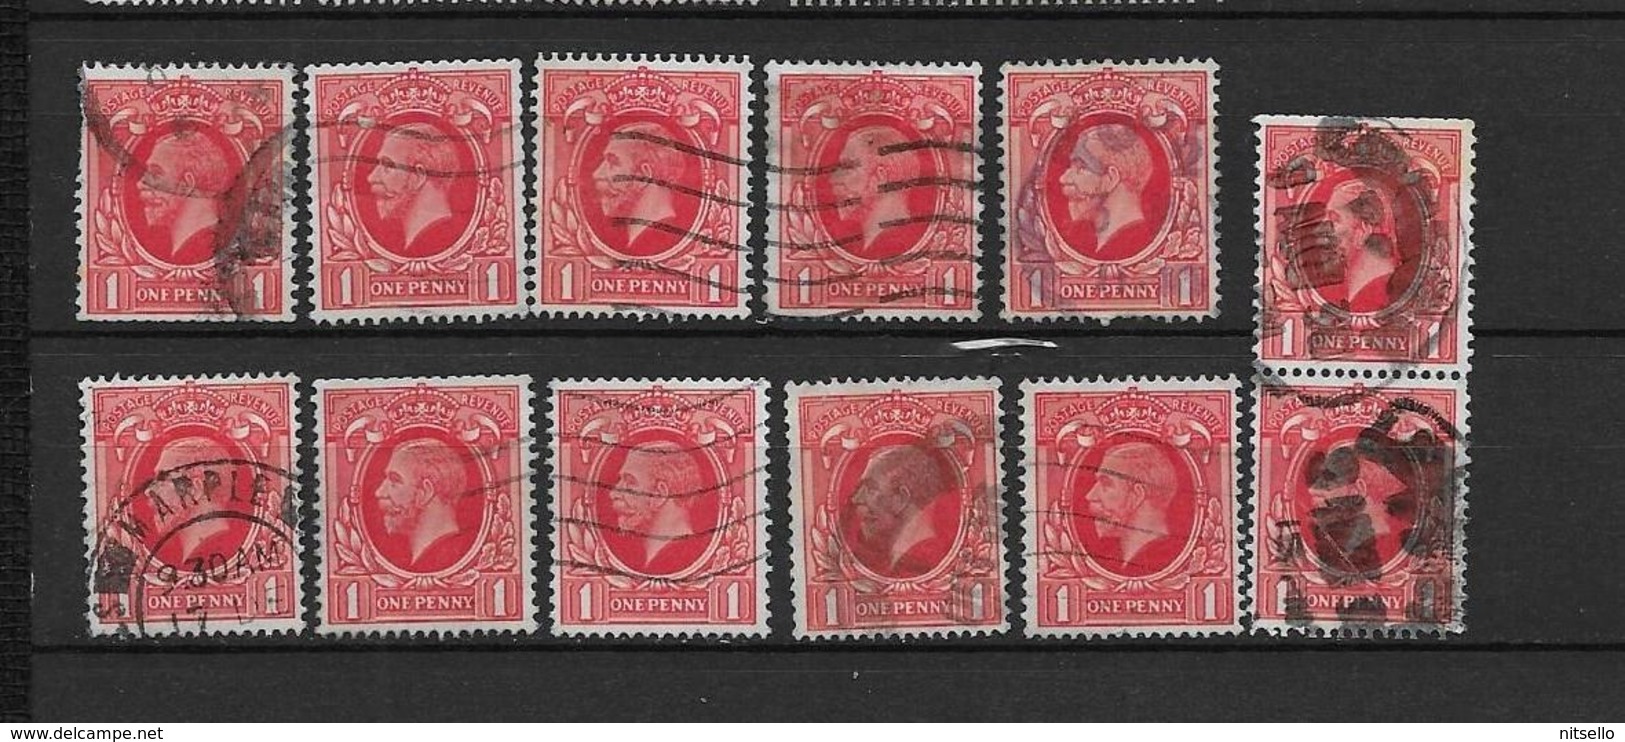 LOTE 1890 /// GRAN BRETAÑA - YVERT Nº: 188  LOTE MATASELLOS // ¡¡¡ LIQUIDATION !!! - Used Stamps